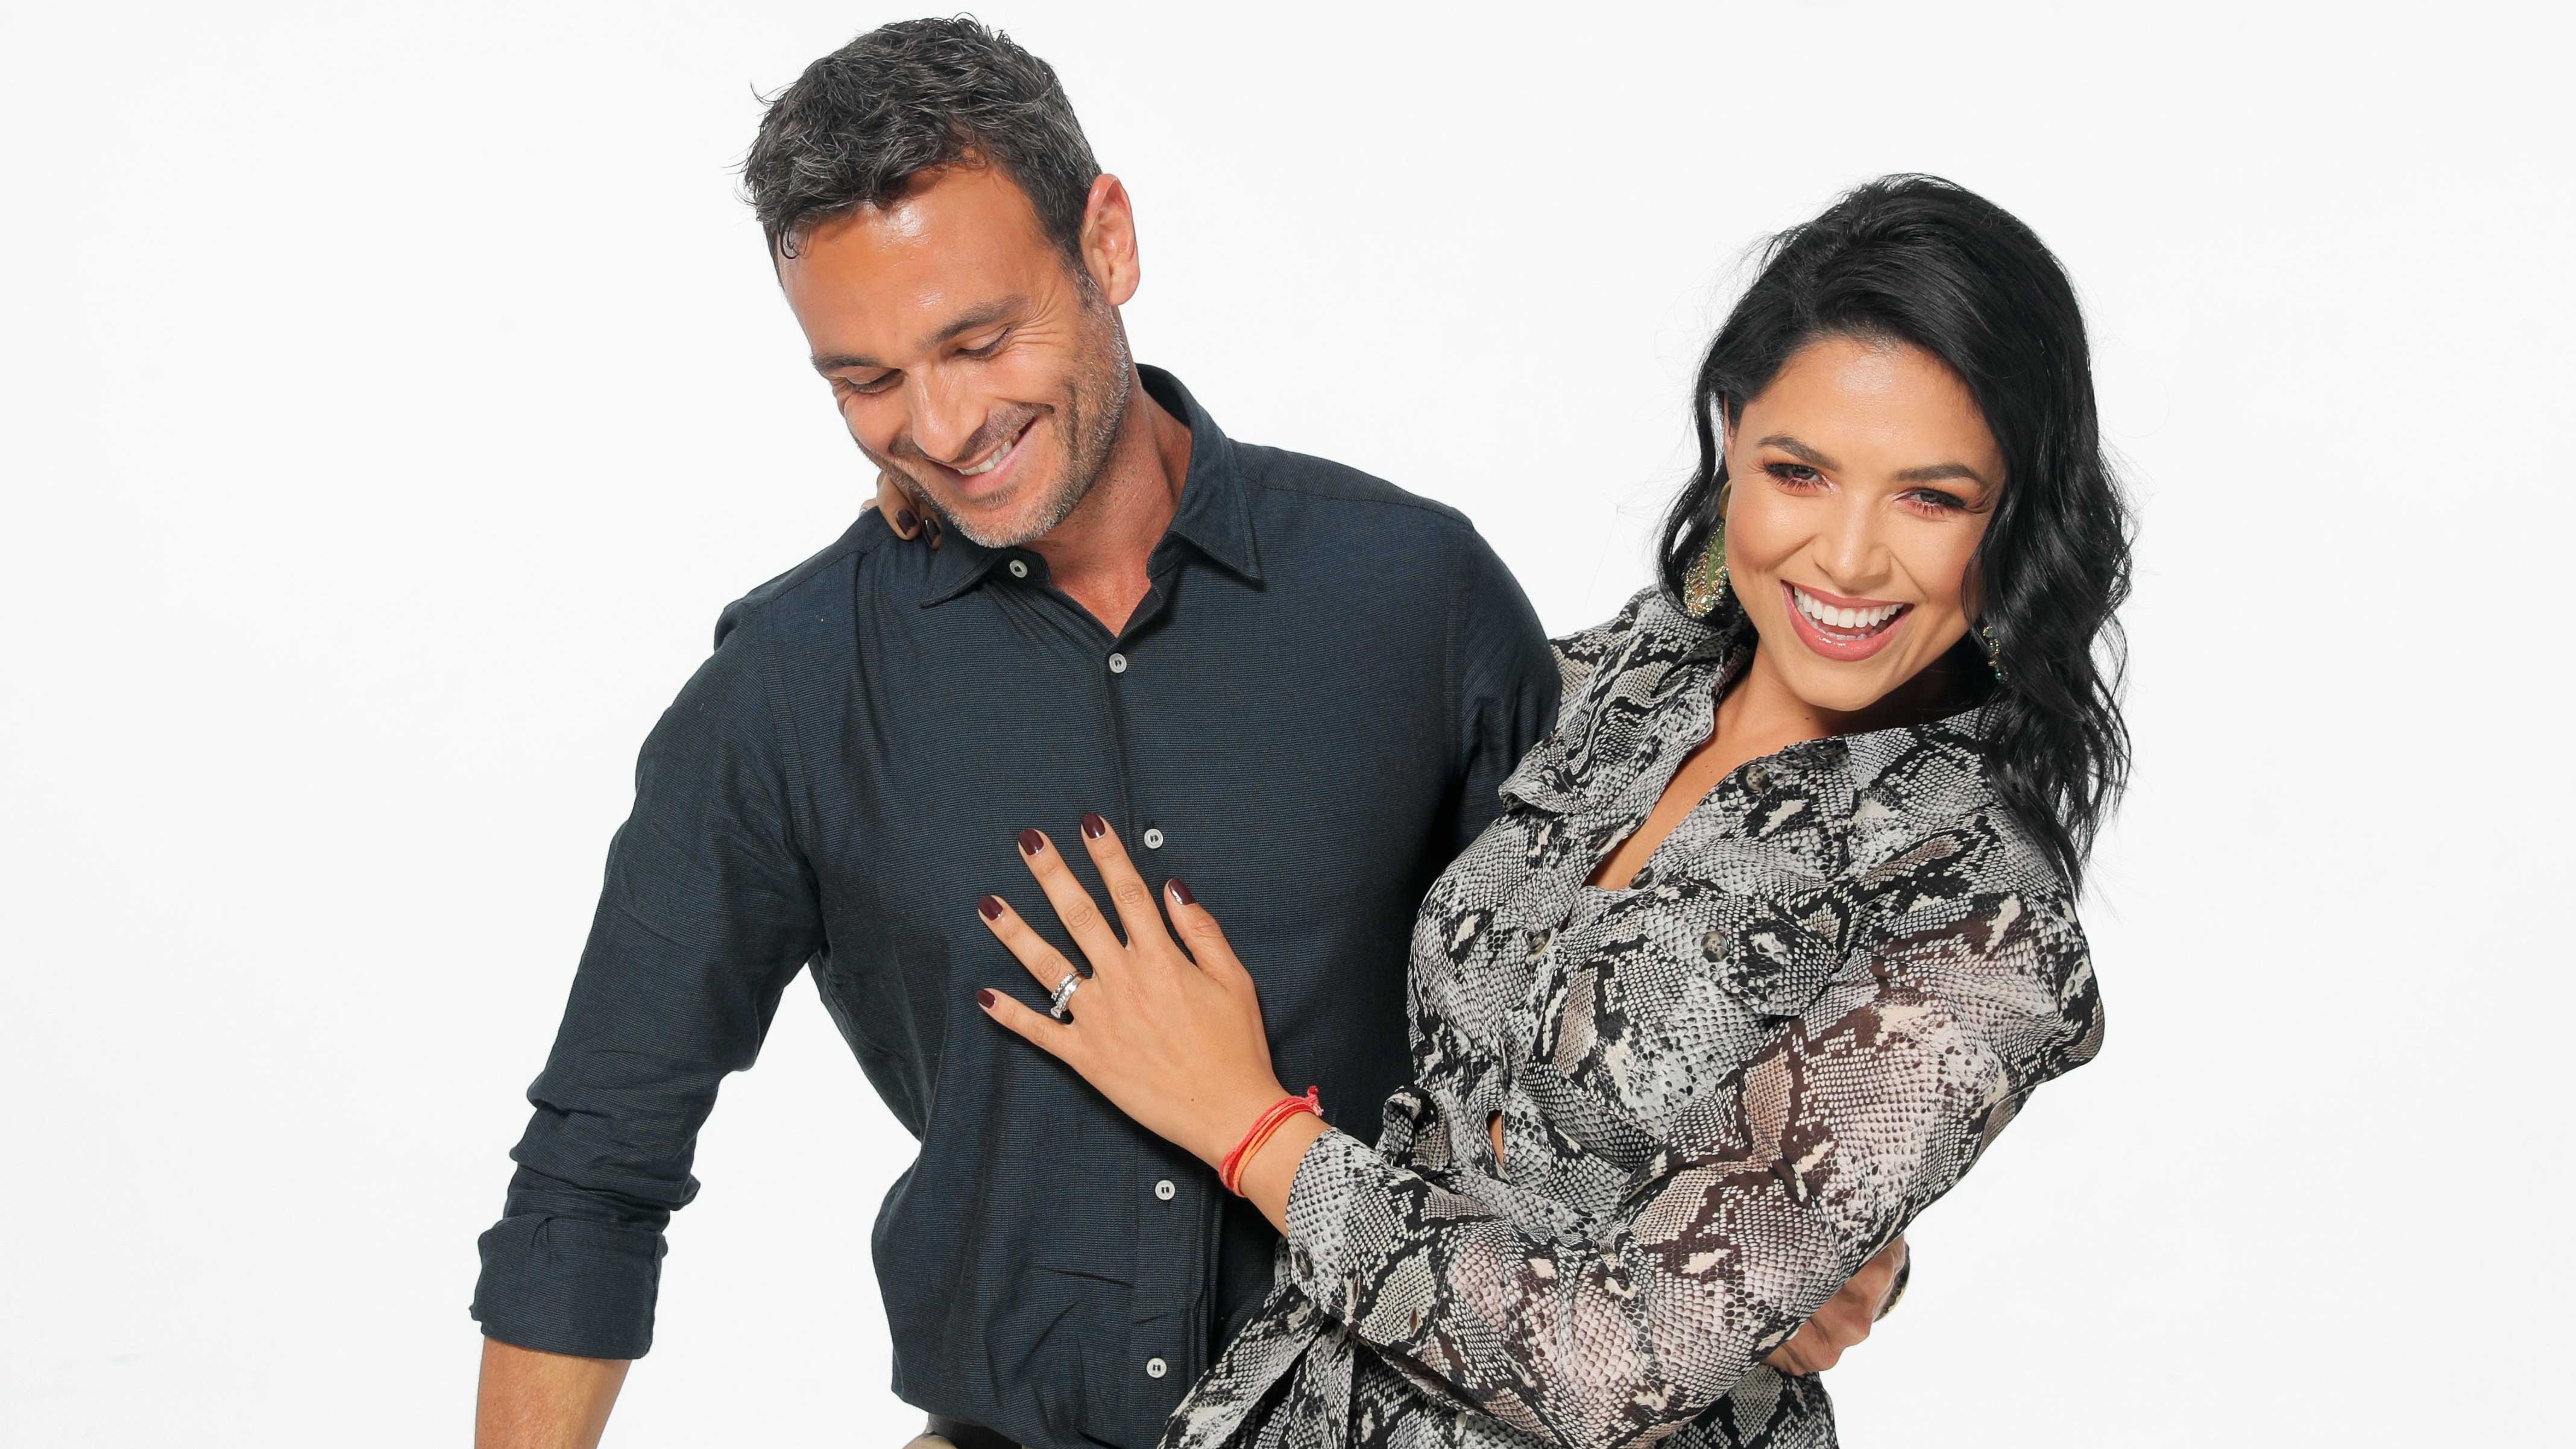 Johanna Ortiz y Esteban Salazar en 2019, cuando tenían cuatro años de casados. Según anunció la expresentadora de televisión, la relación con el entrenador físico se terminó en un mutuo acuerdo, por lo que se divorciarán.